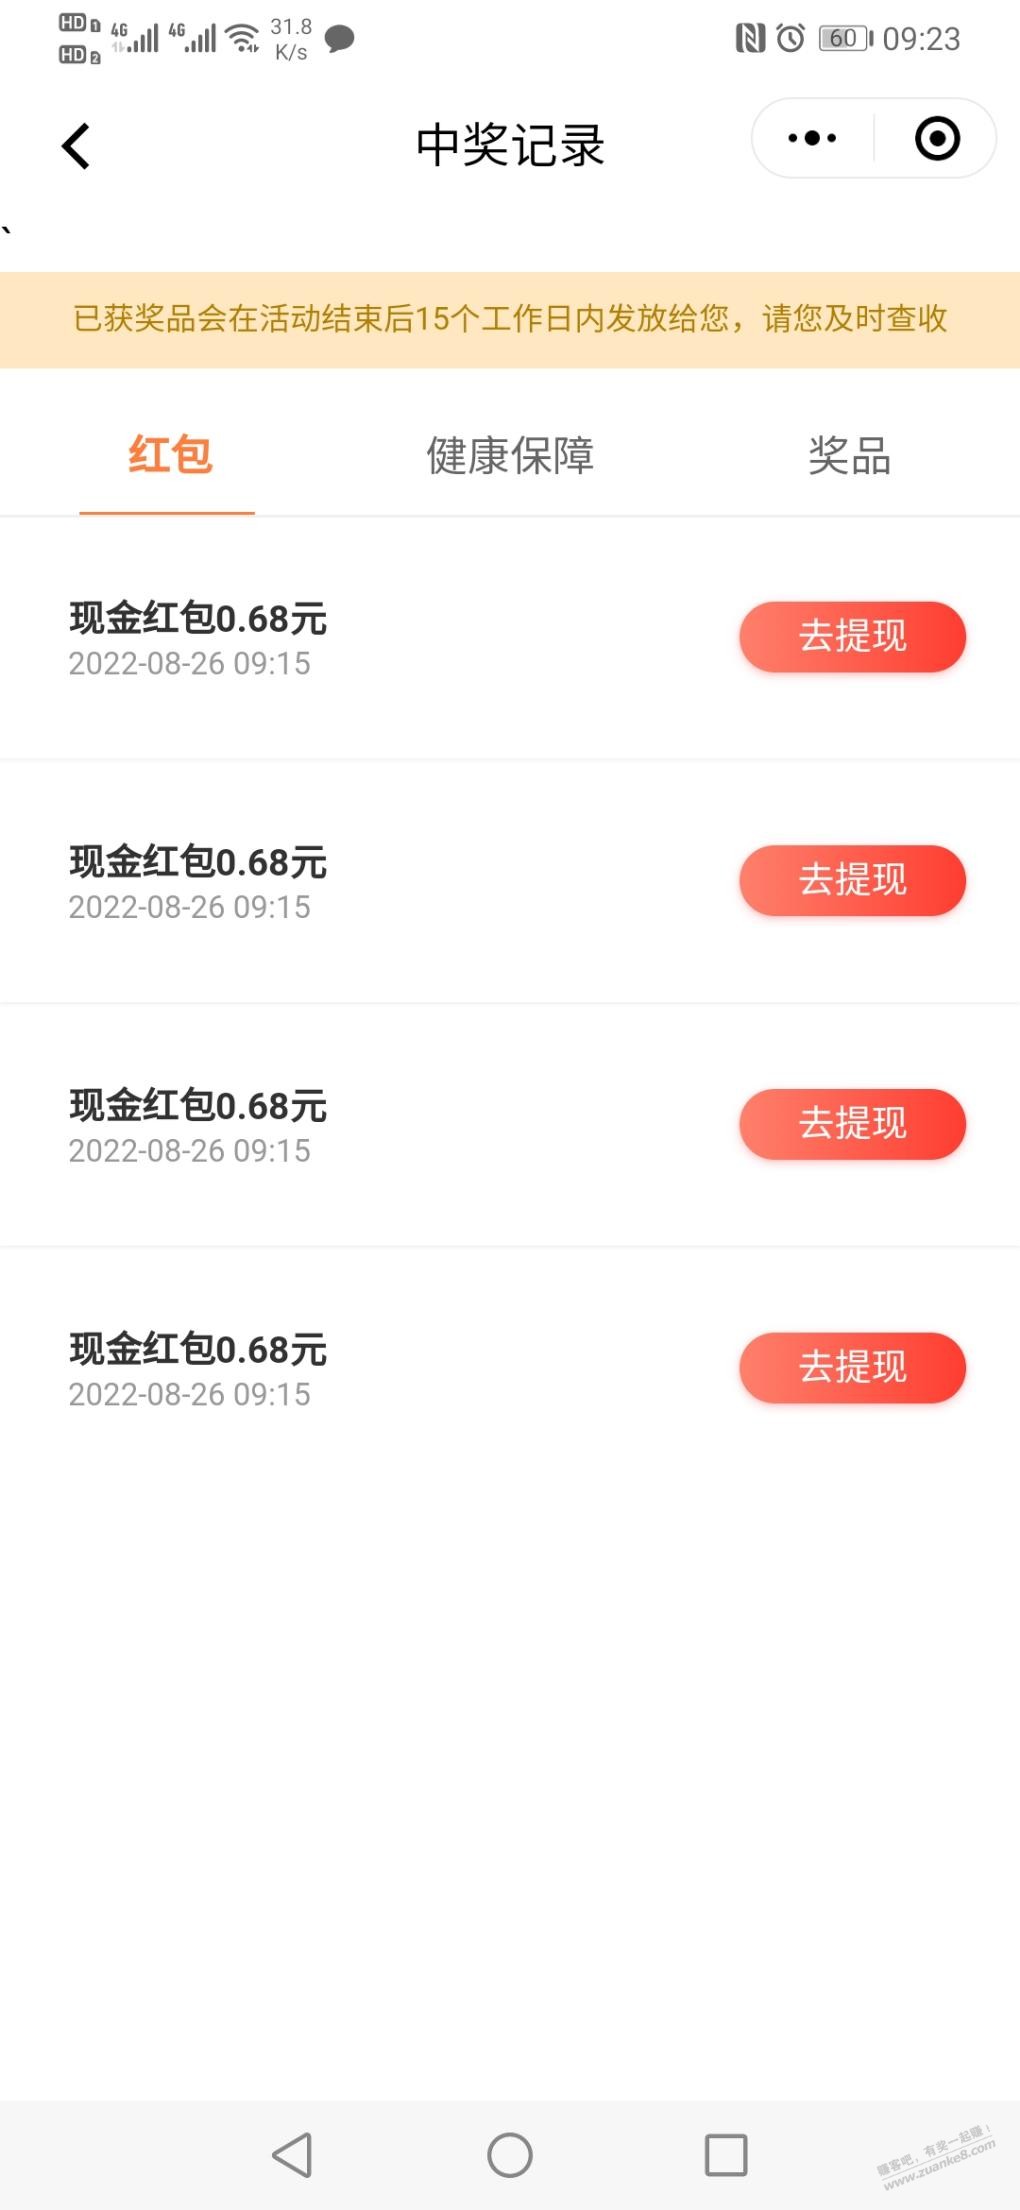 平安vx小程序抽奖-2.72现金-惠小助(52huixz.com)